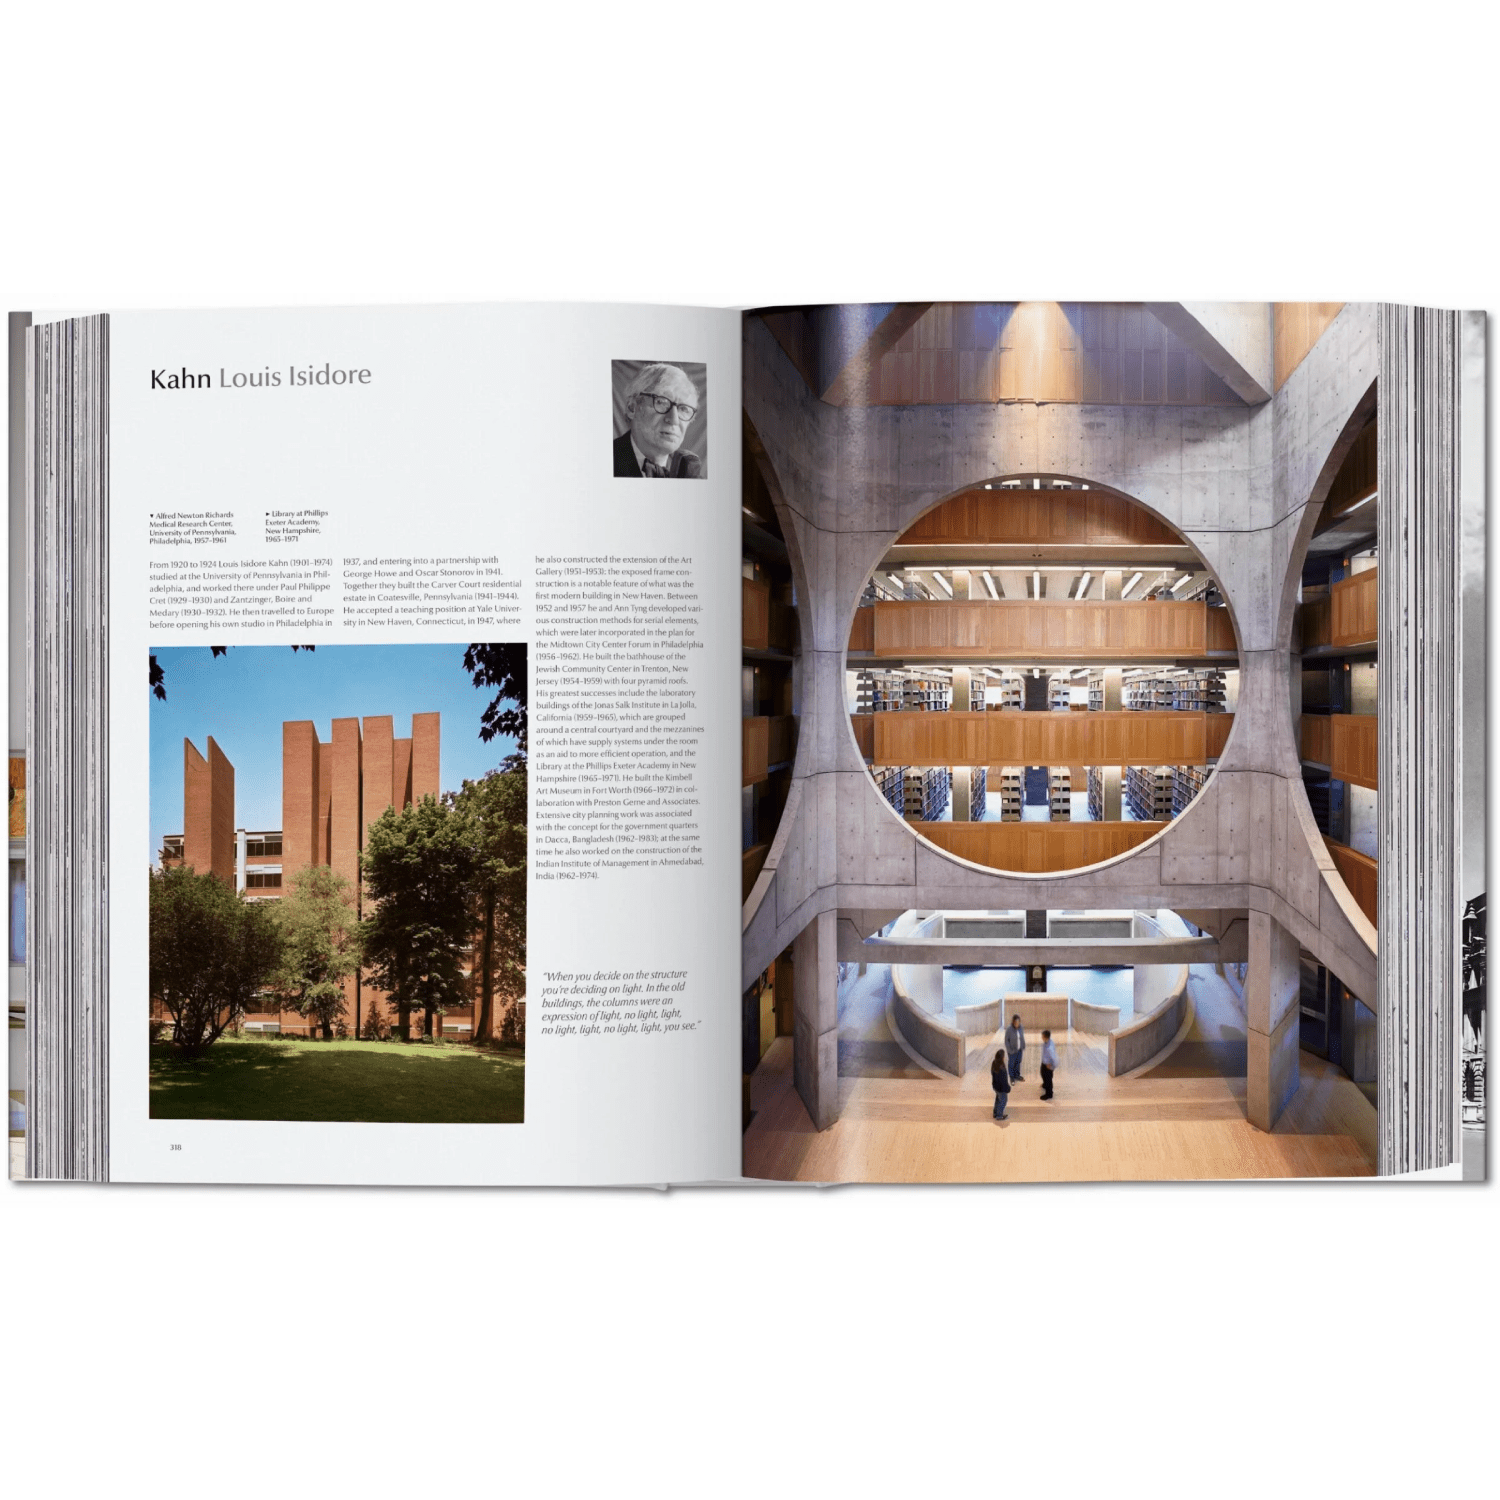 Modern Architecture A–Z Sachbücher von Taschen Verlag